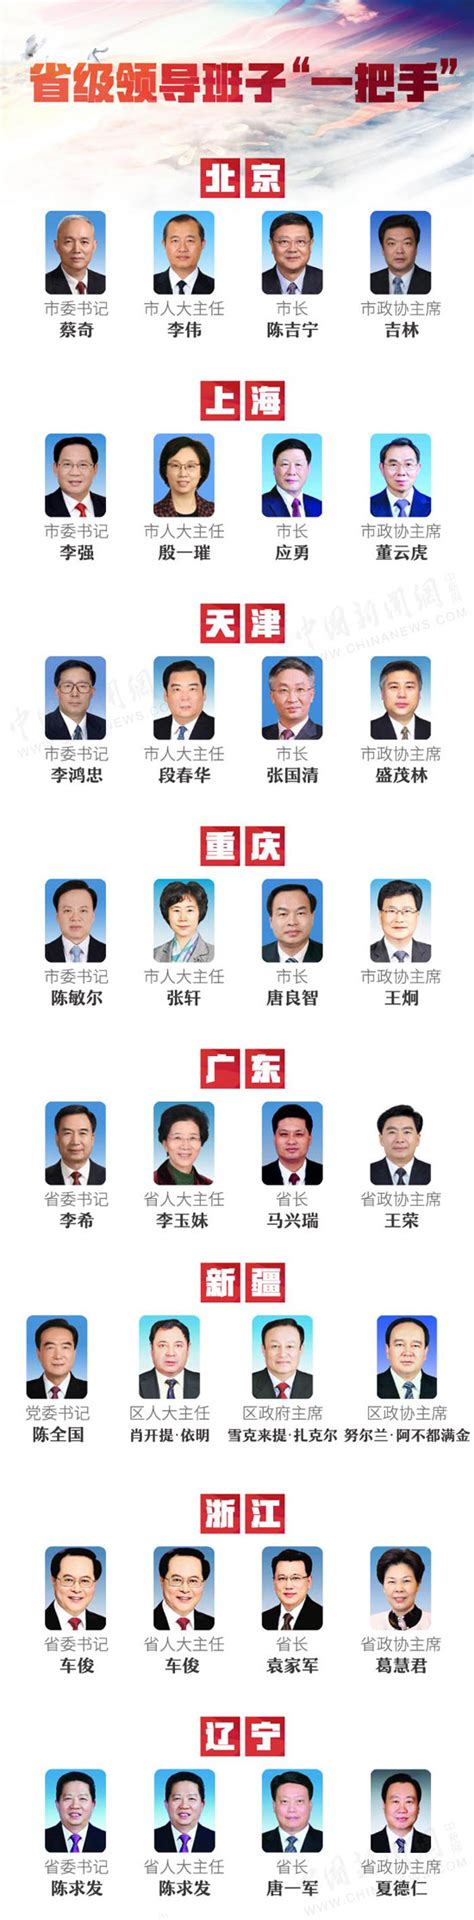 重庆领导名单公示